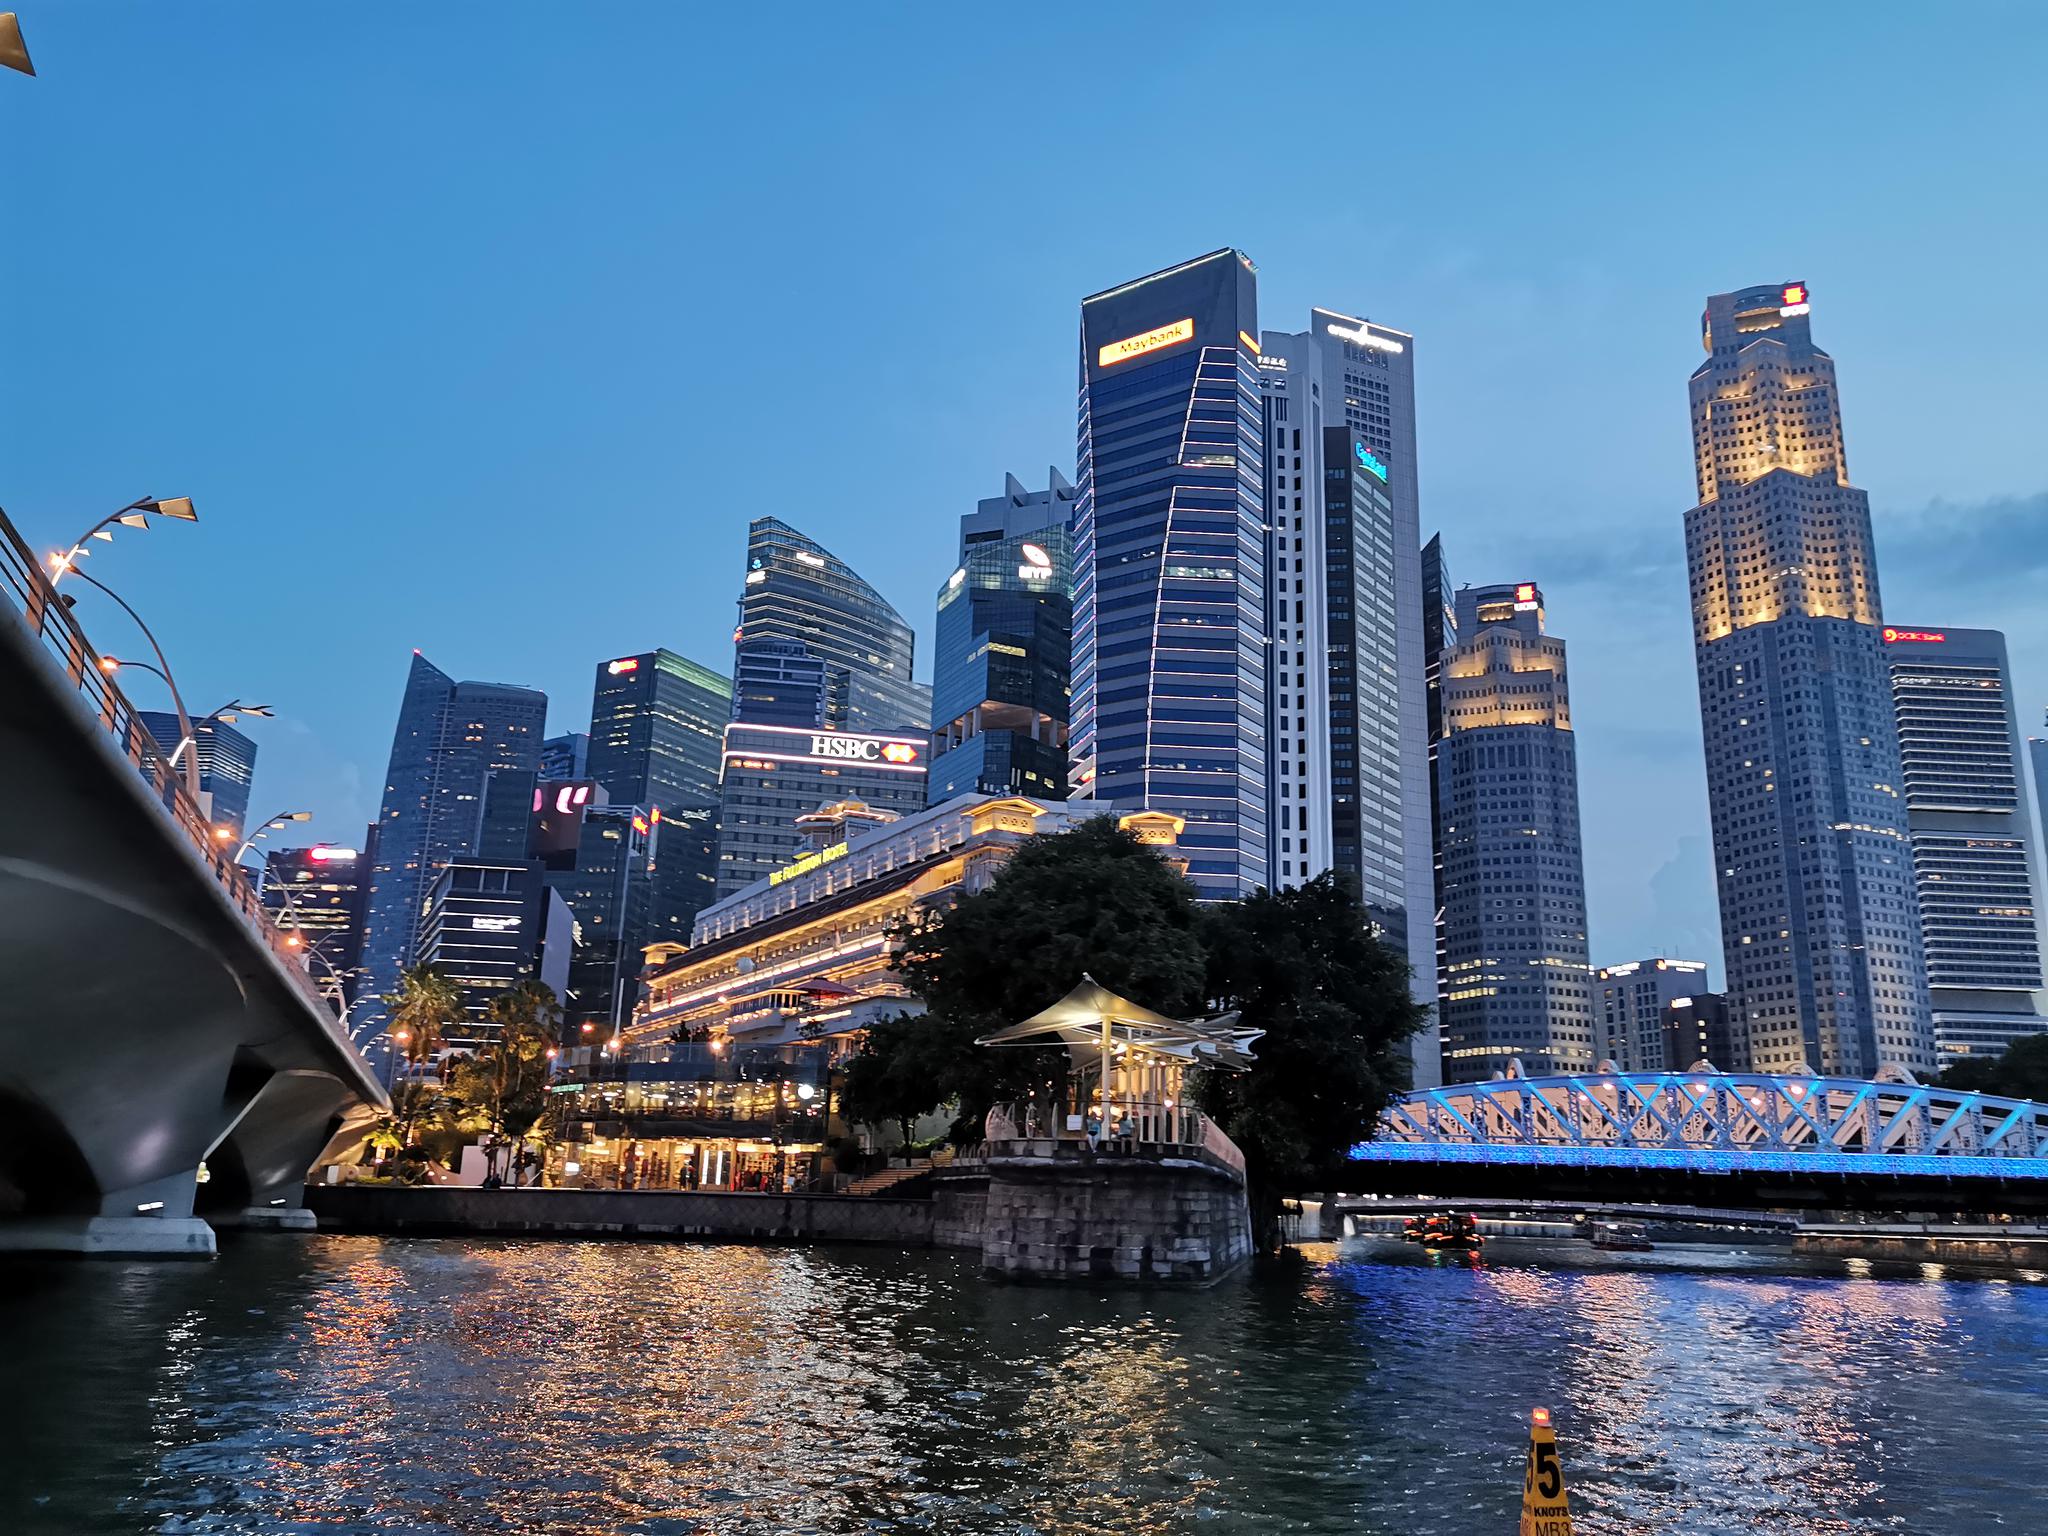 【携程攻略】新加坡新加坡摩天观景轮景点,非常不错，值得一去。一定要等到晚上看夜景，超美。周一去的，人不是…